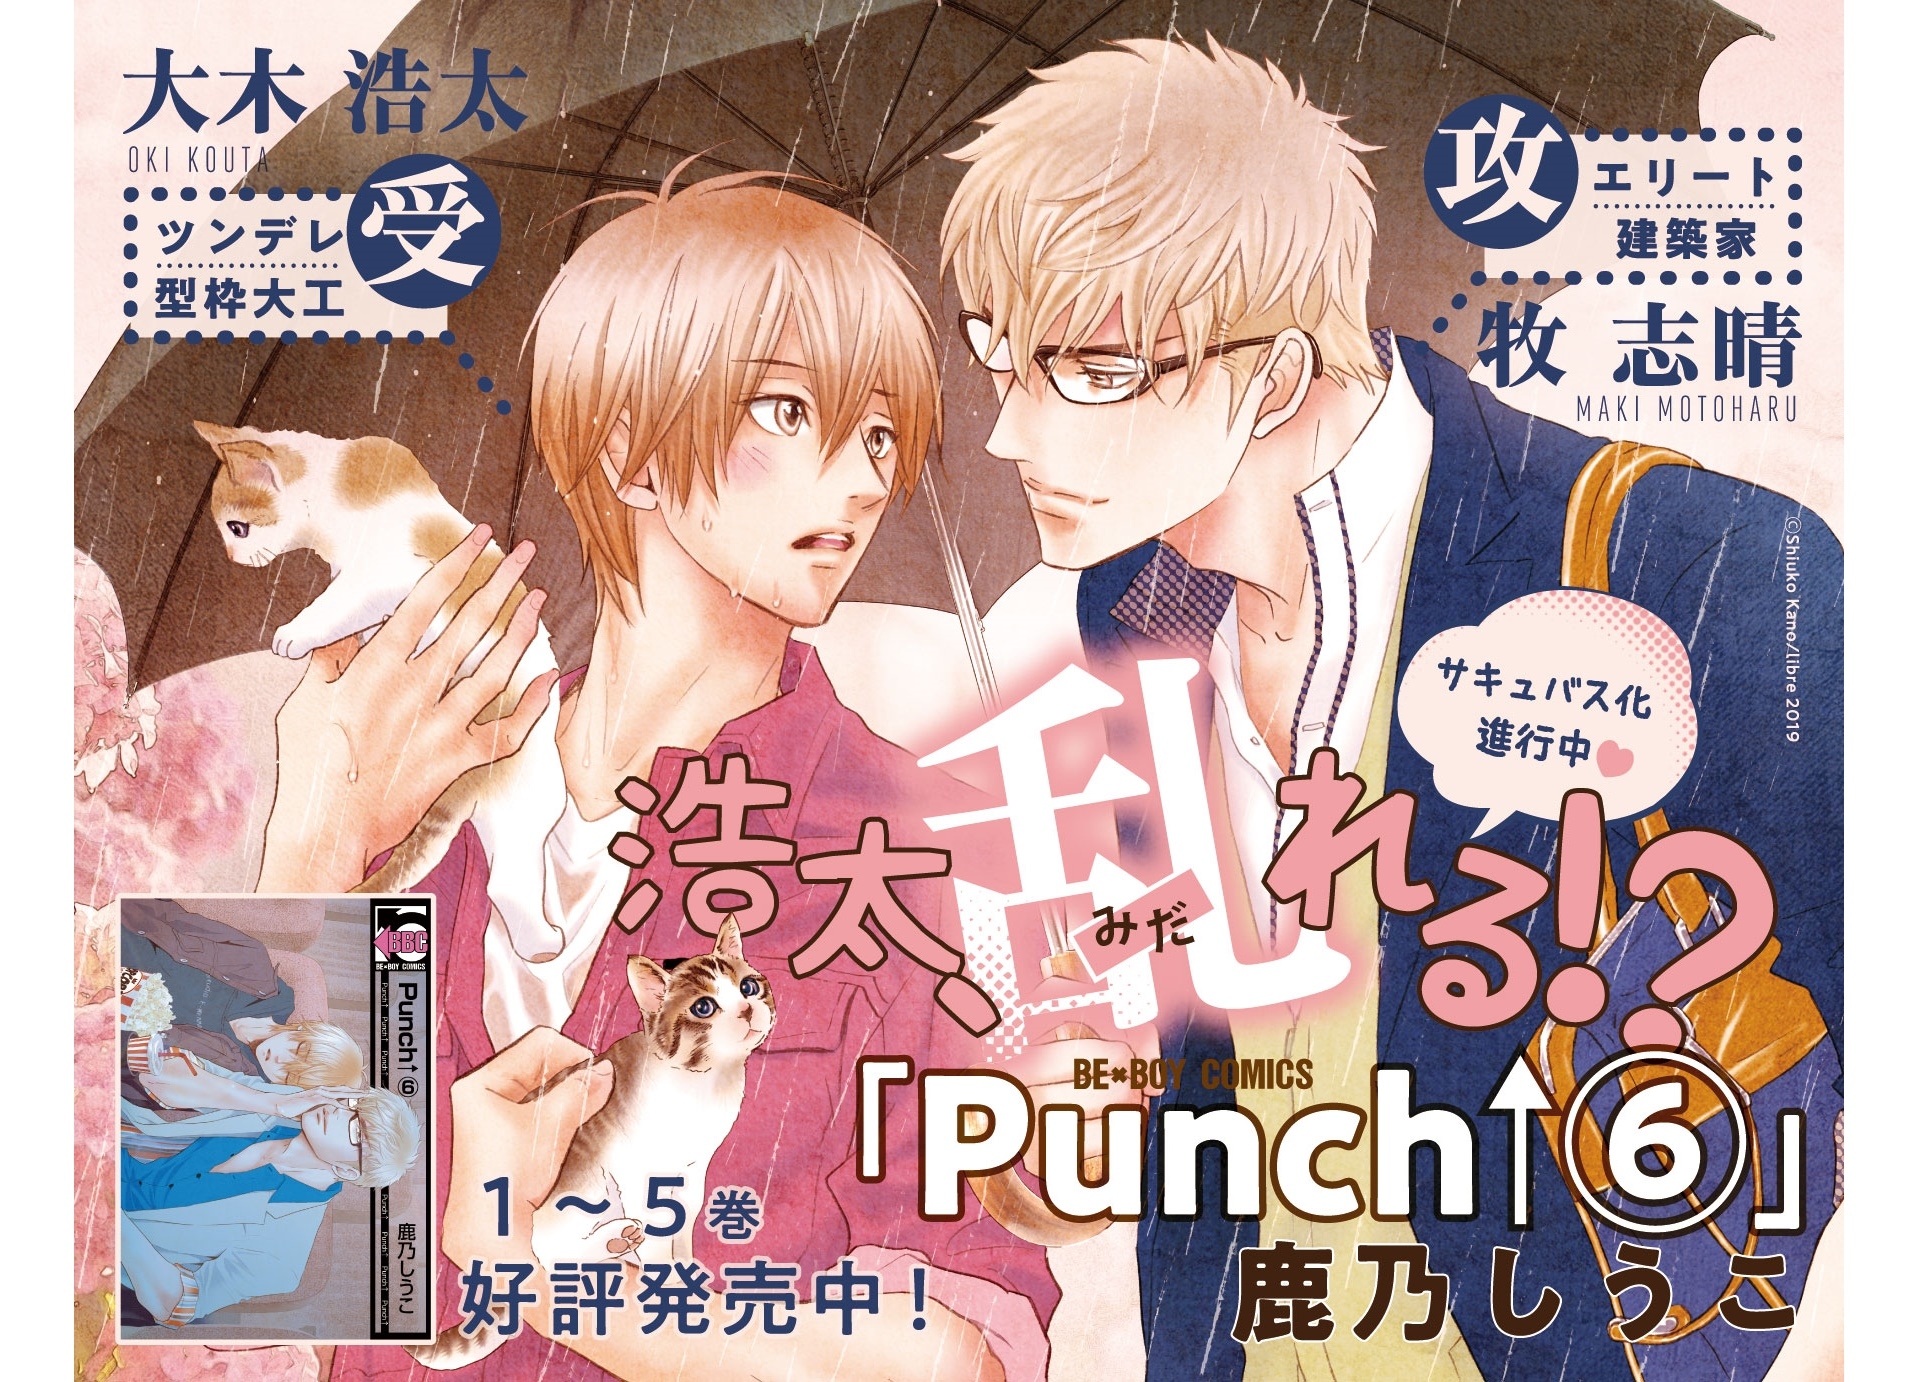 鹿乃しうこ Punch 6 しゃっふる を2冊が同時発売 アニメイトタイムズ